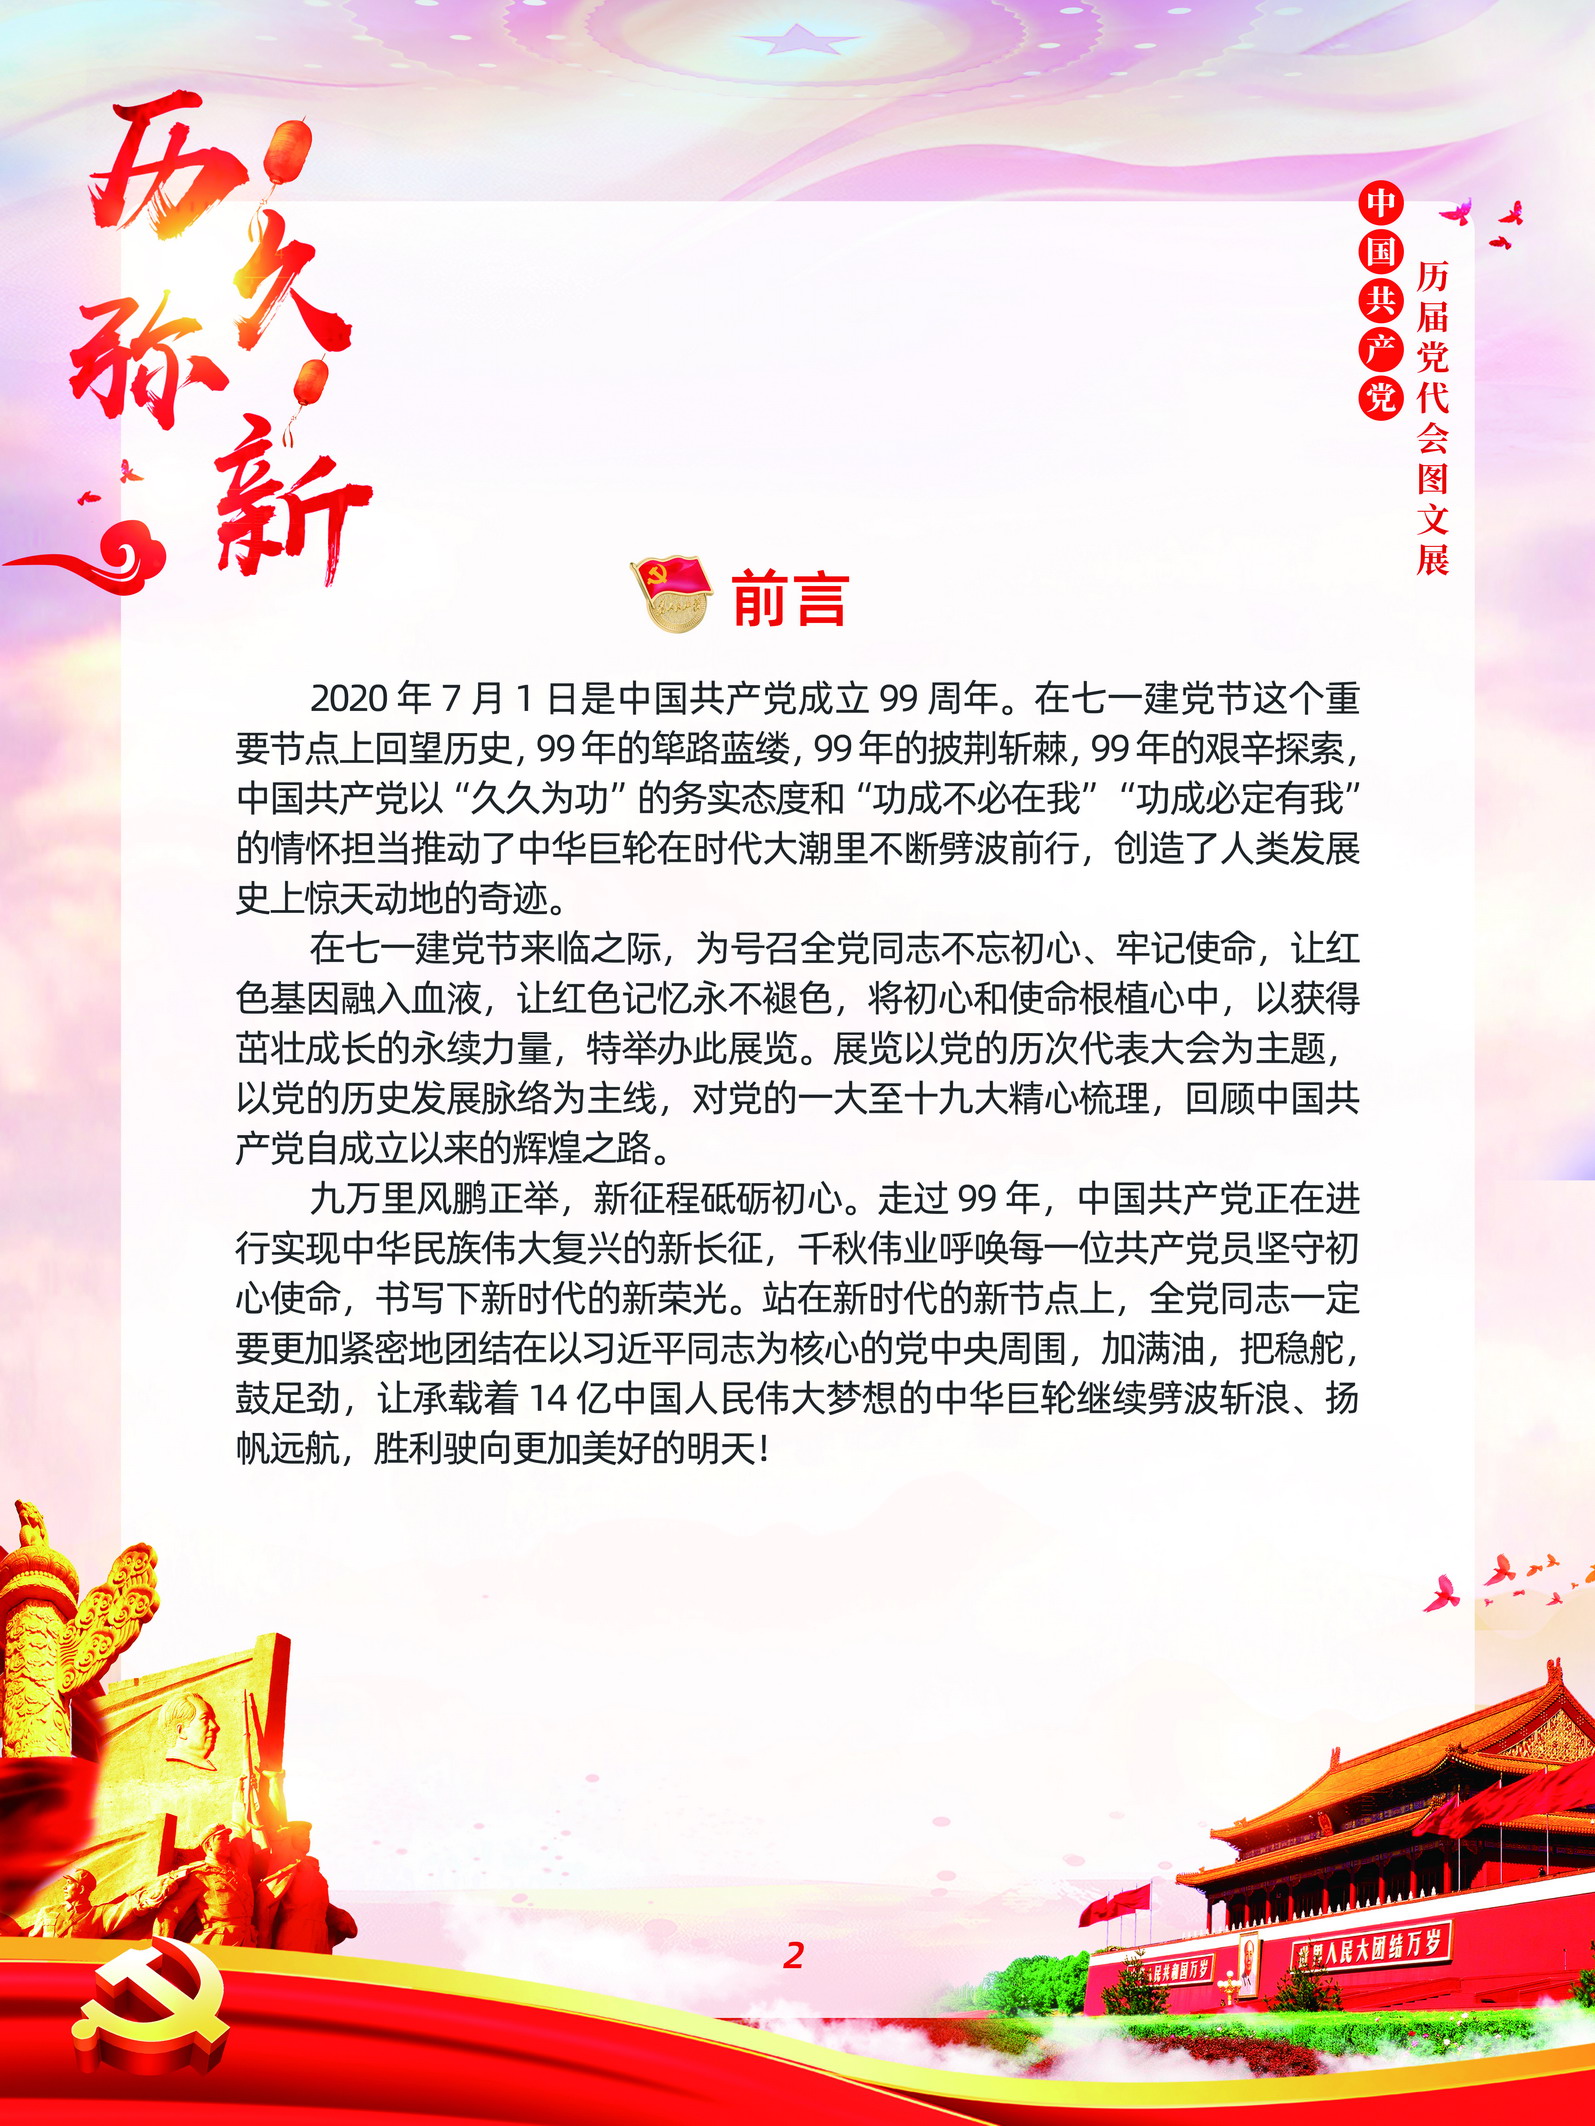 中国共产党历届党代会图文展_图1